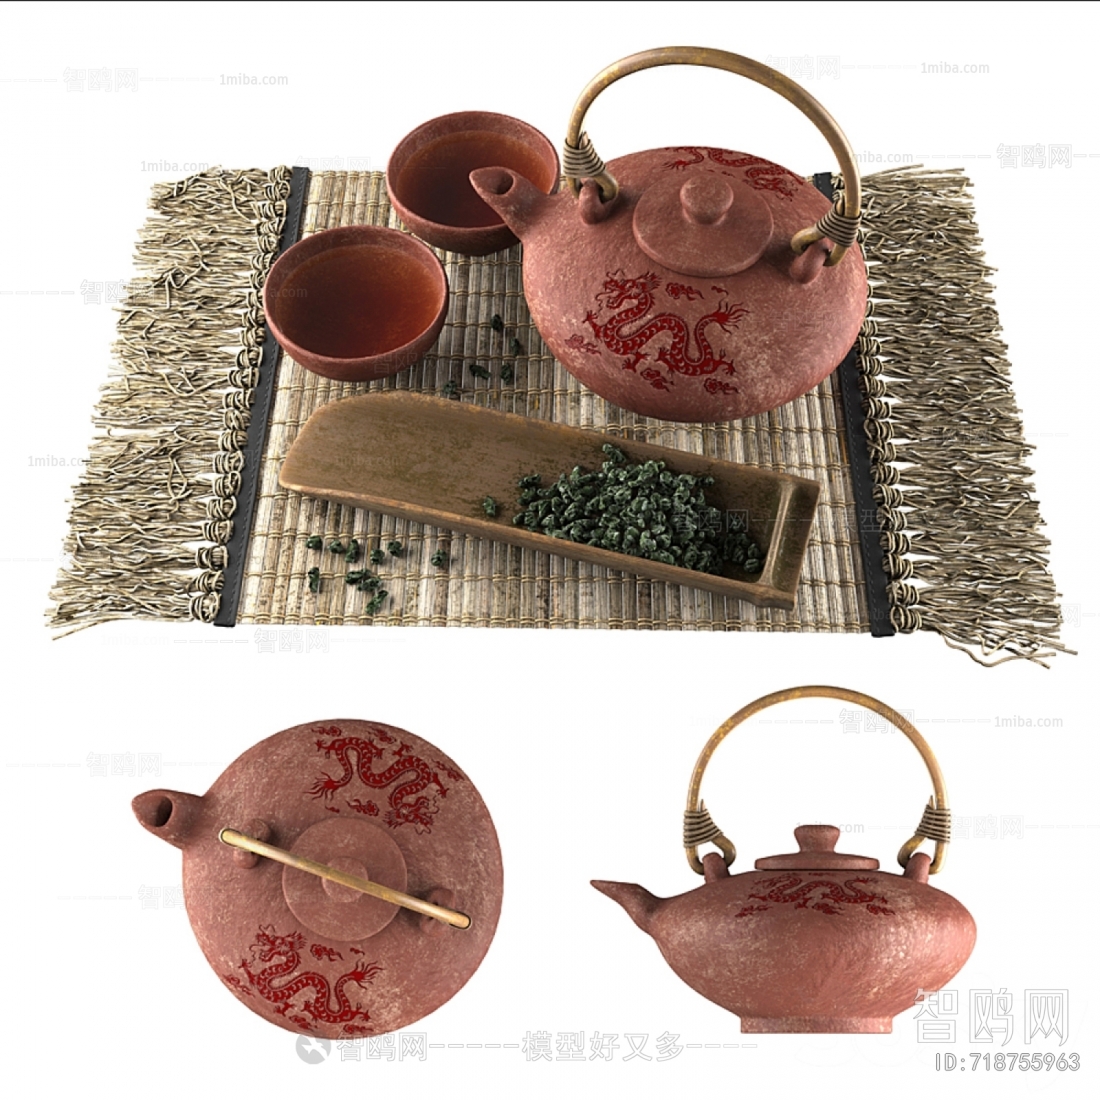 新中式茶具